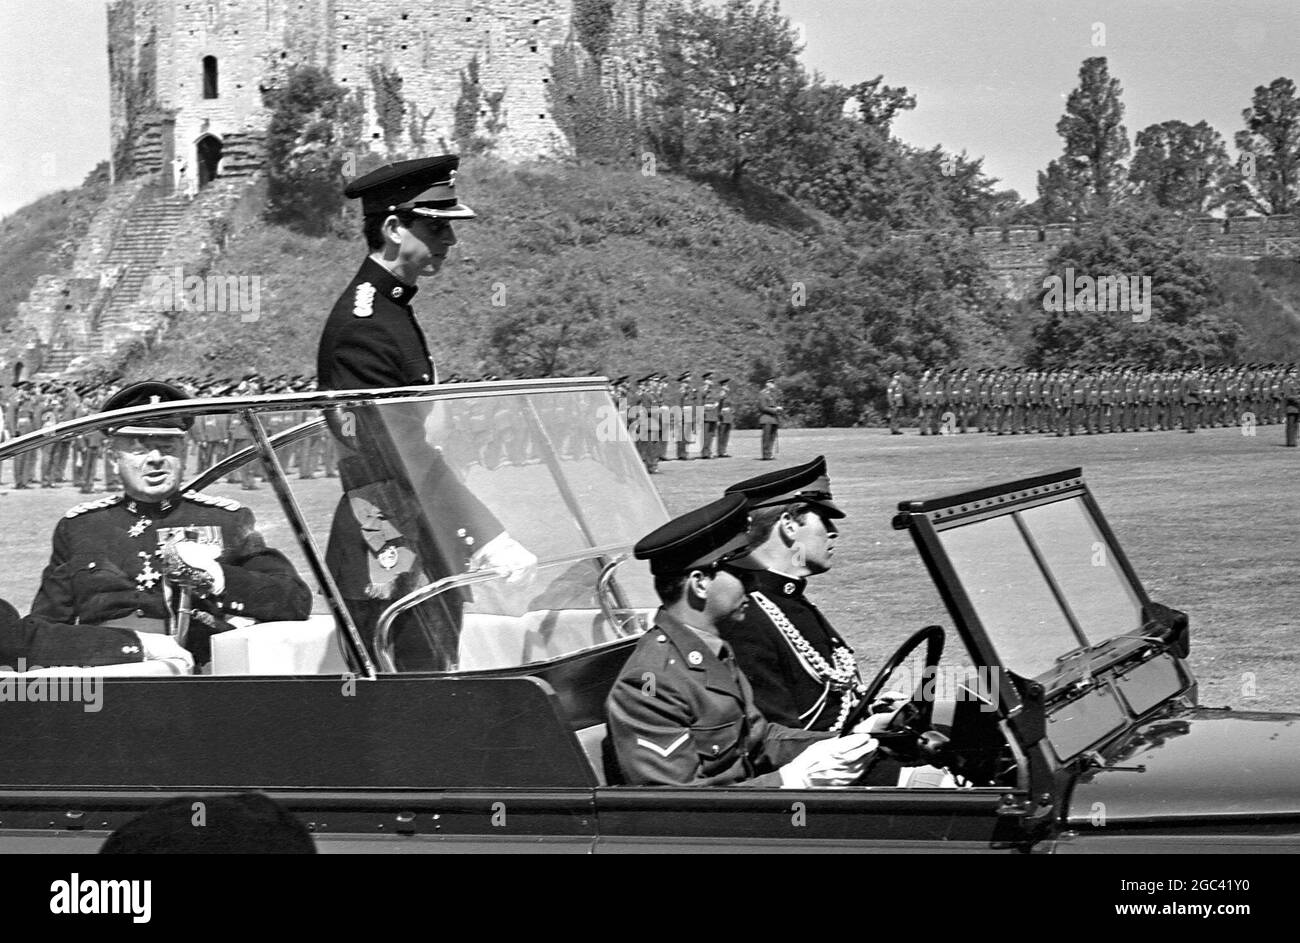 Le prince Charles se trouve dans une voiture ouverte, portant pour la première fois son uniforme d'investiture ici aujourd'hui, lorsqu'il a présenté les couleurs à l'inauguration du Royal Regiment of Wales, et a accepté la liberté de la ville au nom du régiment. L'uniforme, bleu foncé, est celui qu'il porte en tant que nouveau colonel en chef du Royal Regiment, et celui qu'il portera à son investiture en tant que prince de Galles au château de Caernavon le 1er juillet 1969. Lors de la cérémonie d'inauguration, les Borderers du sud du pays de Galles et le Welsh Regiment ont été amalgamés en un seul régiment. Cardiff Castle Green, Cardiff, Wale Banque D'Images